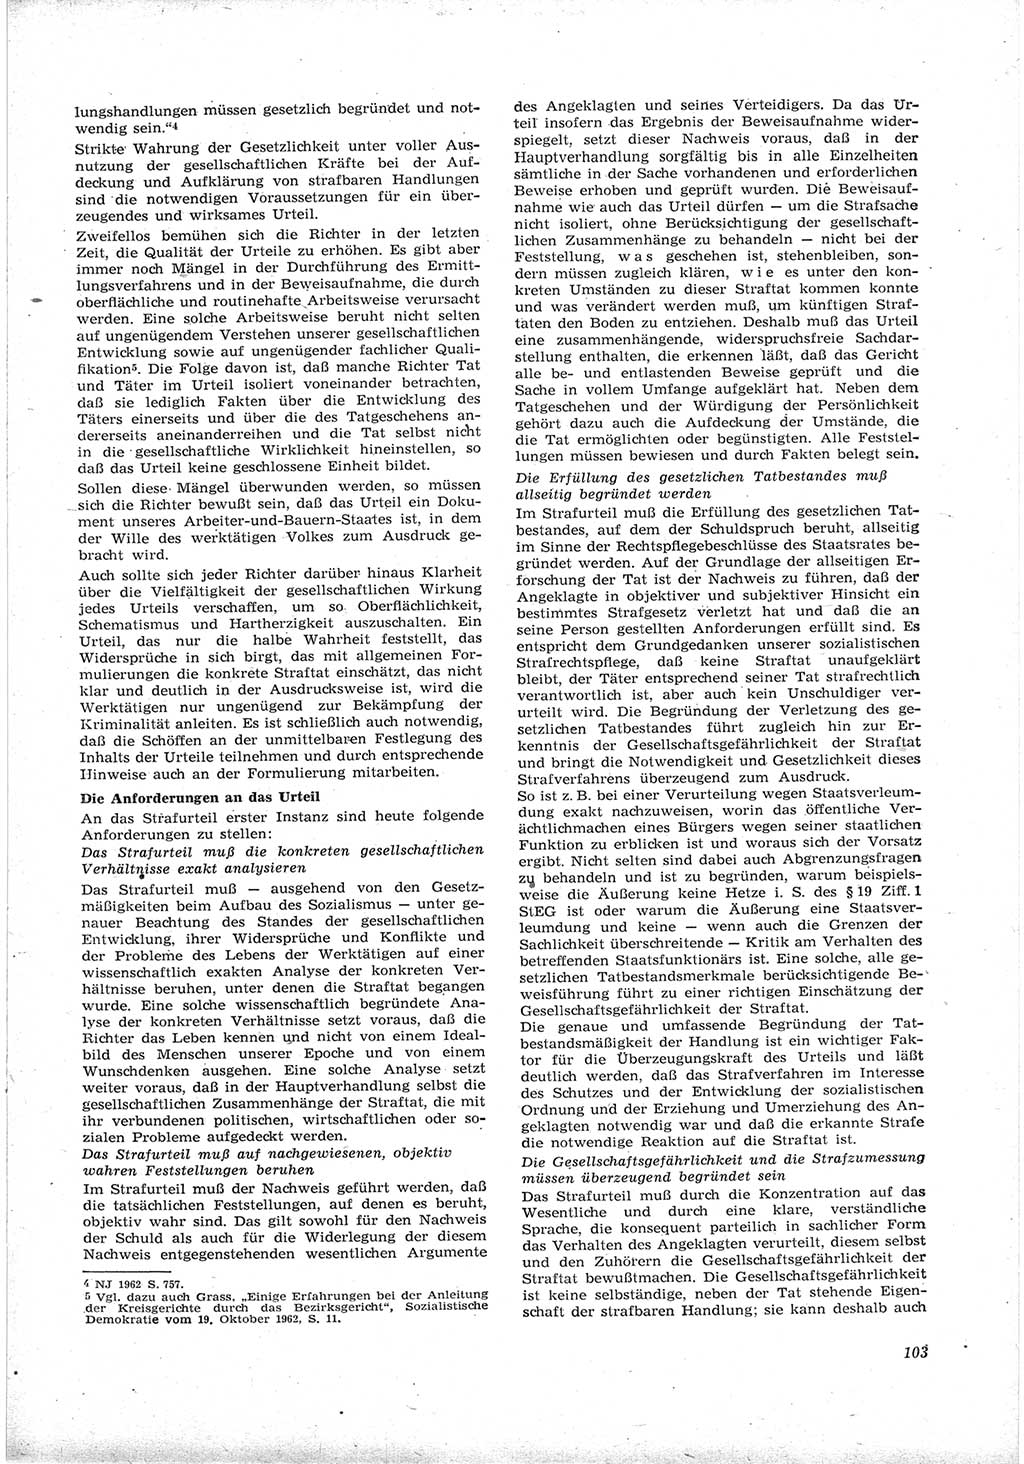 Neue Justiz (NJ), Zeitschrift für Recht und Rechtswissenschaft [Deutsche Demokratische Republik (DDR)], 17. Jahrgang 1963, Seite 103 (NJ DDR 1963, S. 103)